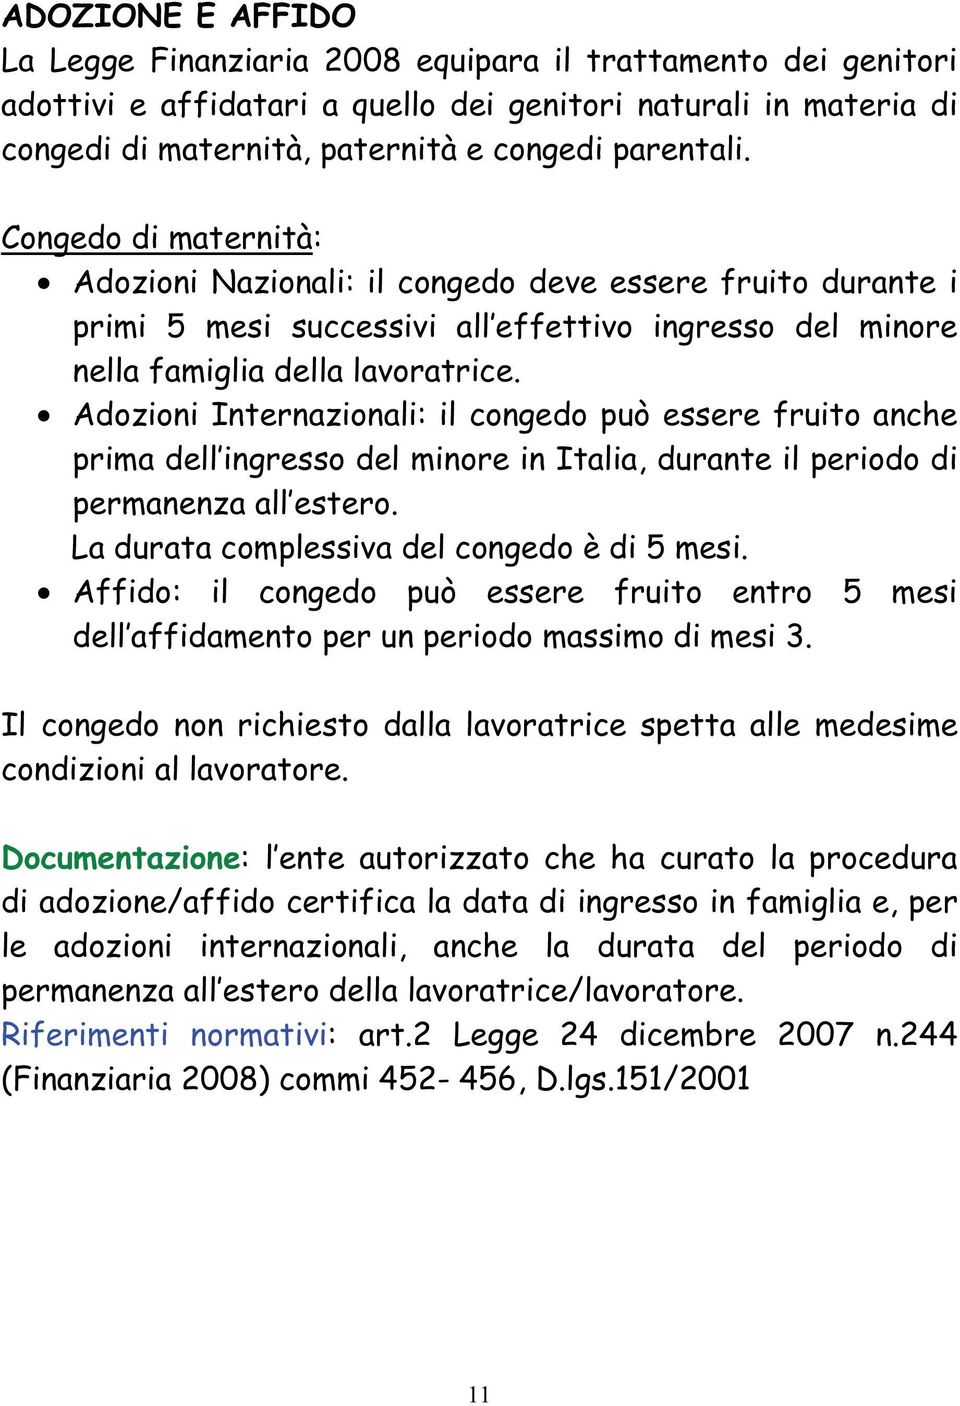 Adozioni Internazionali: il congedo può essere fruito anche prima dell ingresso del minore in Italia, durante il periodo di permanenza all estero. La durata complessiva del congedo è di 5 mesi.